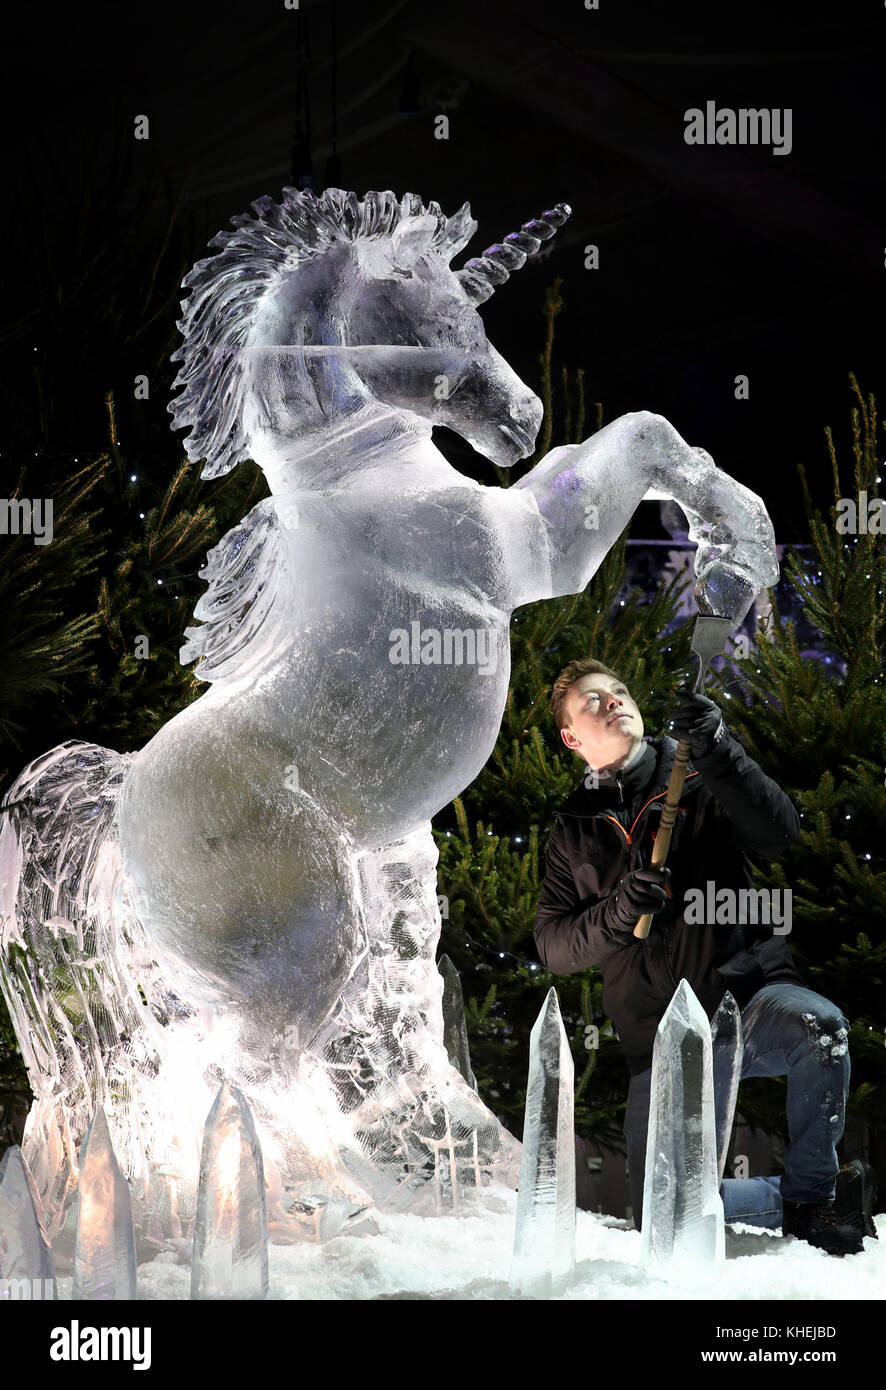 Maestro scultore di ghiaccio jack hackney mette i tocchi di rifinitura per una scultura di ghiaccio di un unicorno, che fa parte della prossima mostra il ghiaccio avventura: un viaggio attraverso la Scozia congelati in George Street, Edimburgo. Foto Stock